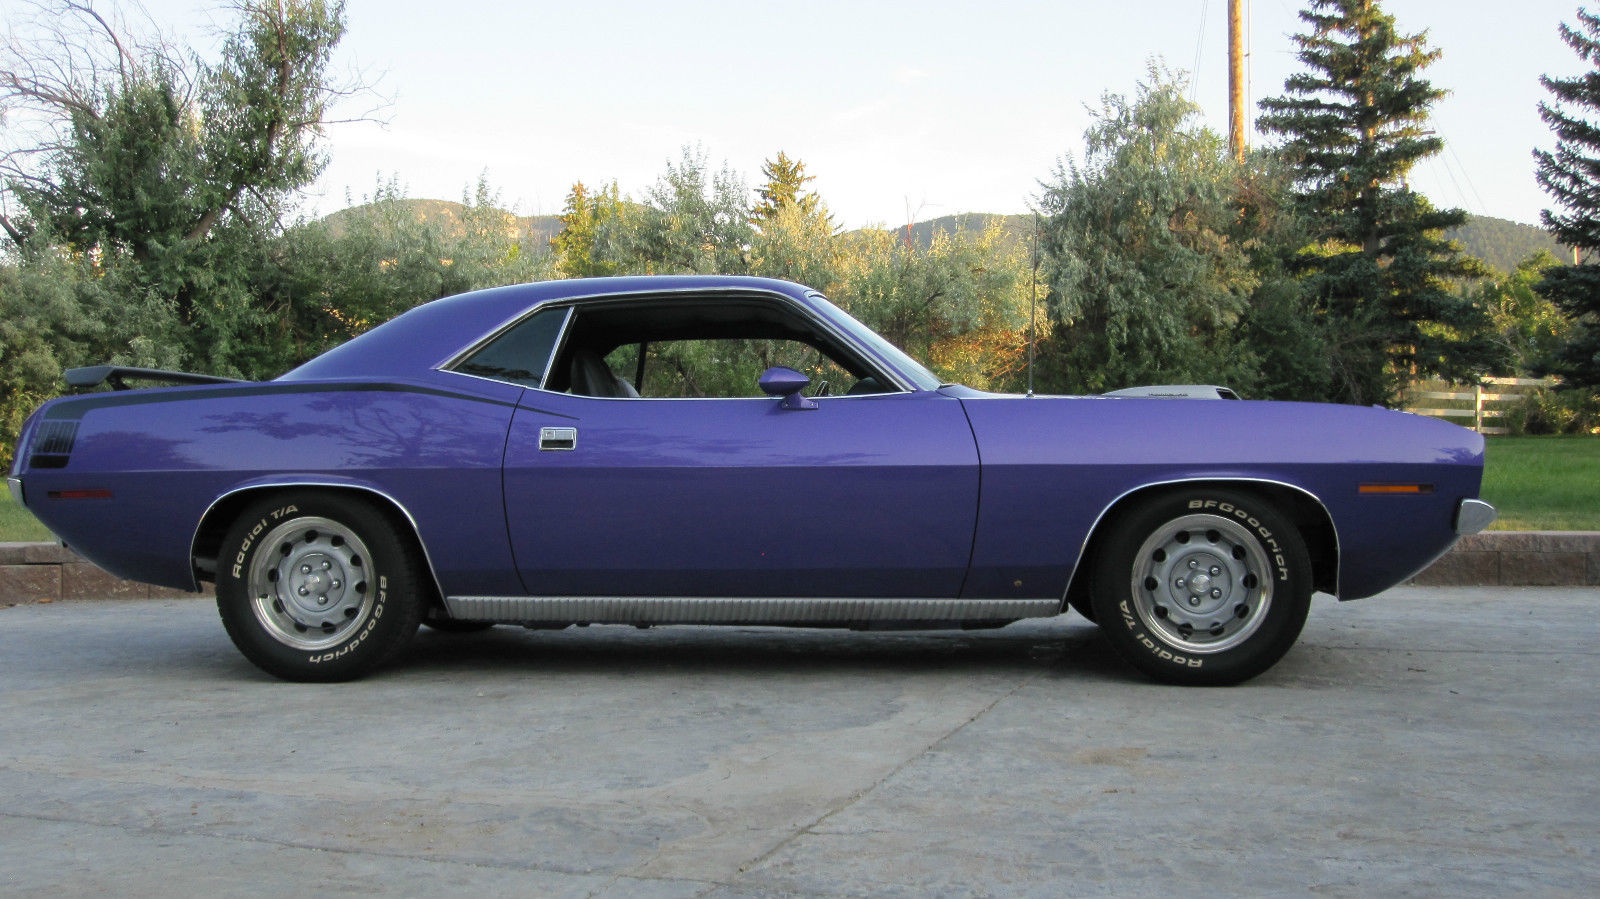 Cuda 1970 Plum Purple Hemi Crazy Plymouth 426 Dana Barracuda Spd Tribute.